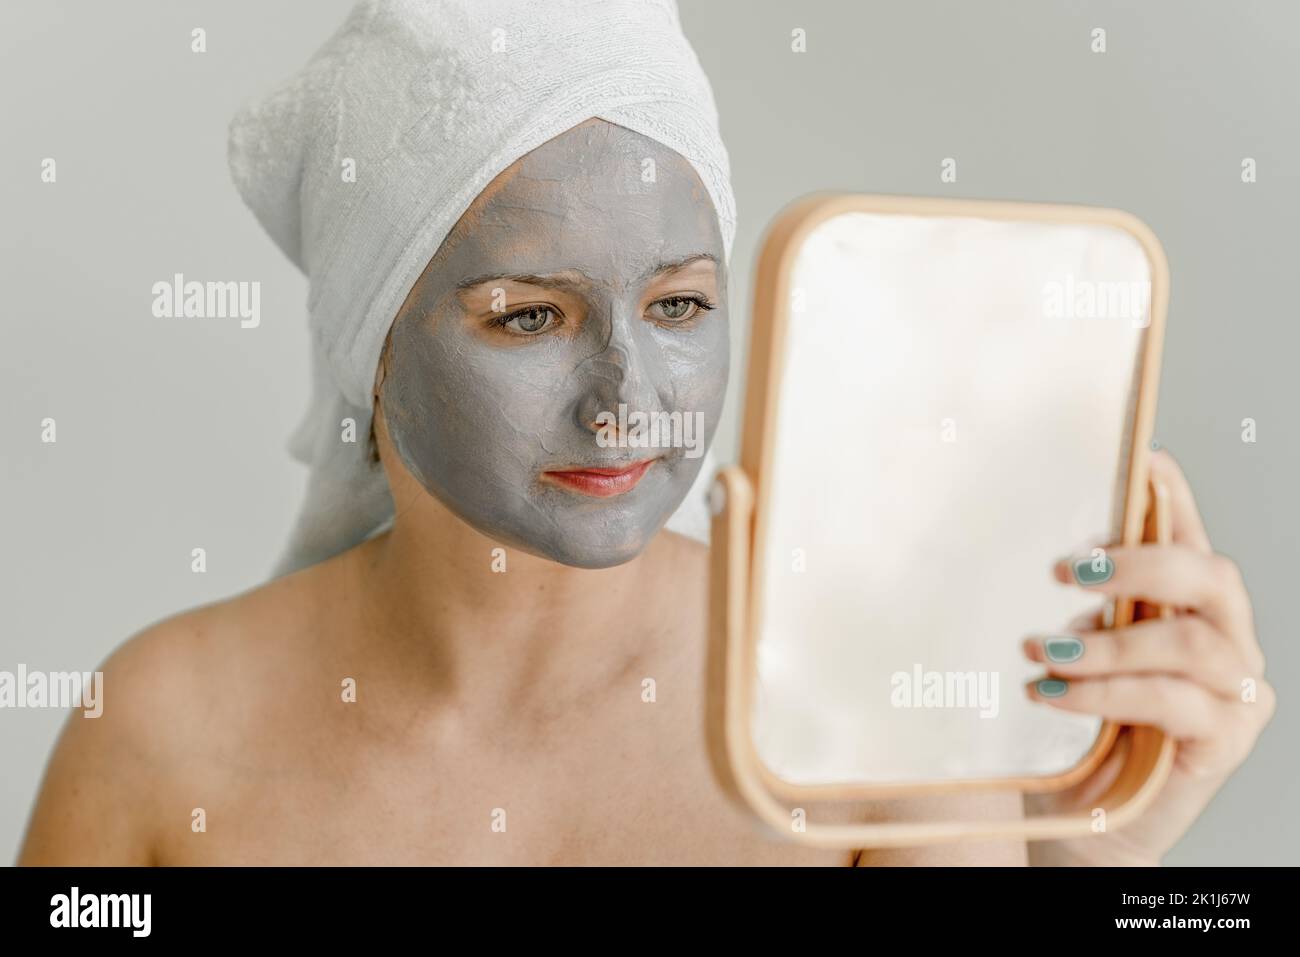 Junge Frau mit grauer Tonkosmetikmaske auf ihrem Gesicht sieht im Spiegel aus, ihre Haare und ihr Körper sind in ein Handtuch gewickelt. Nahaufnahme Stockfoto